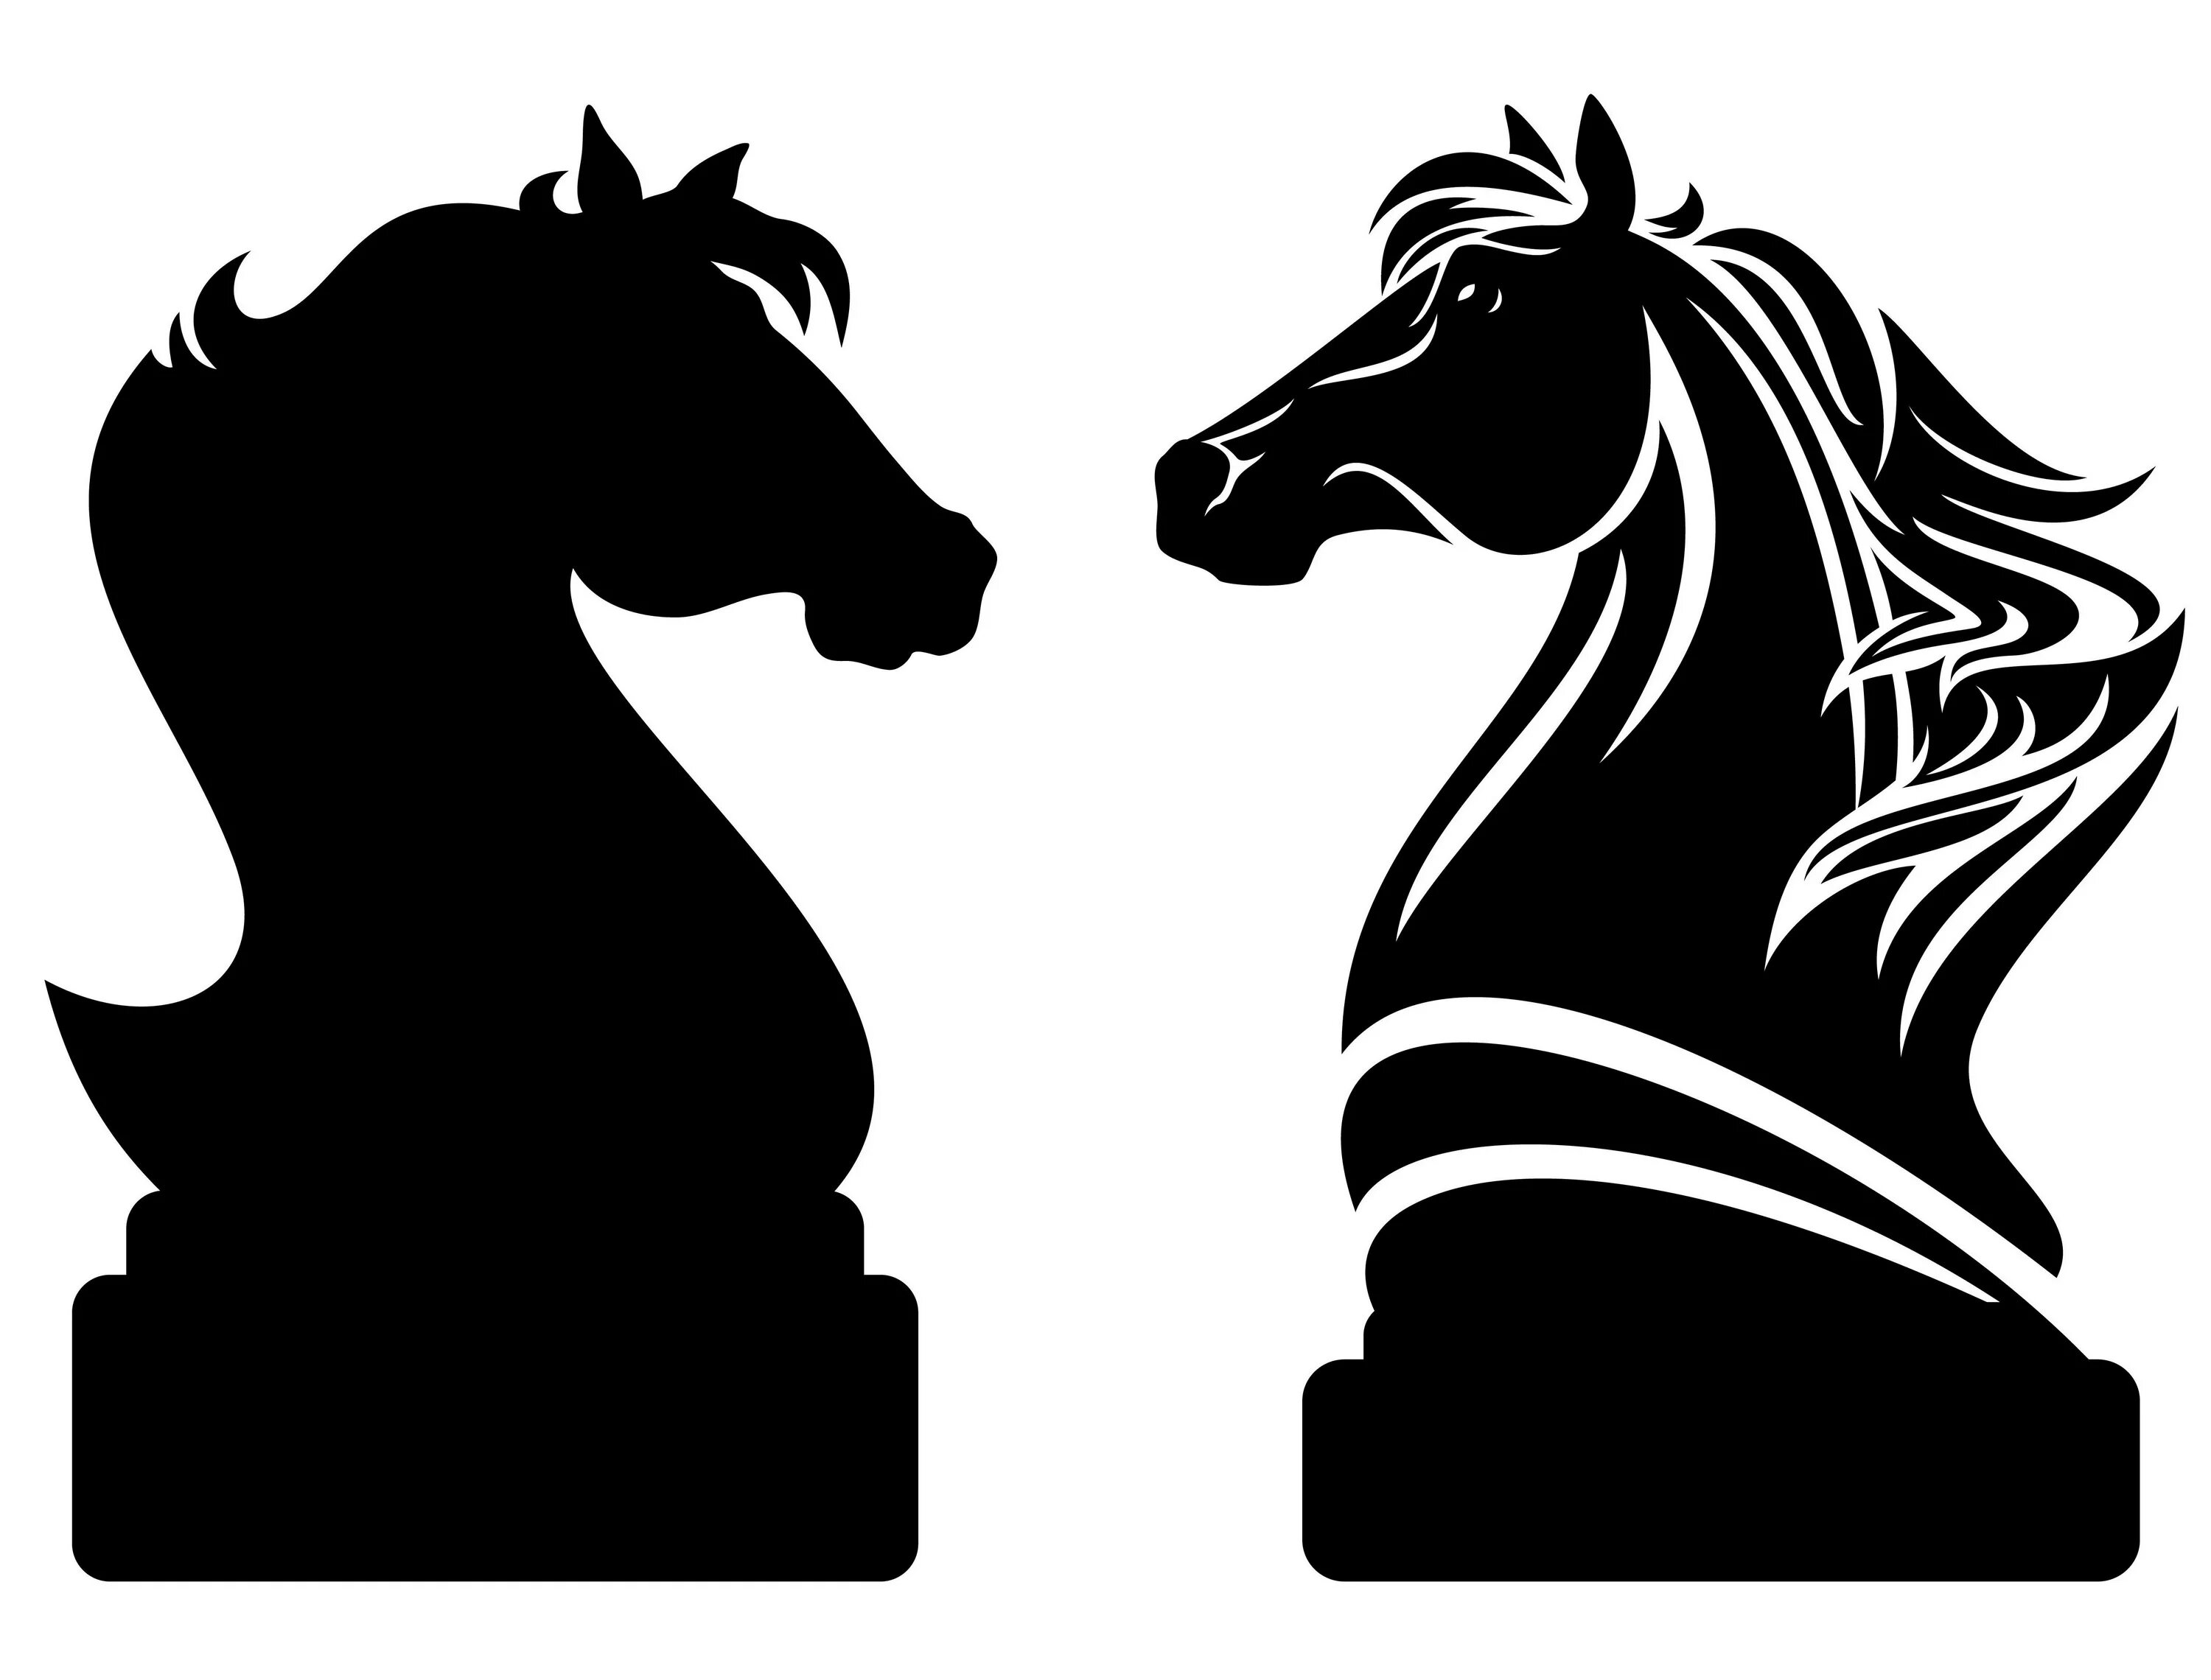 Шахматный конь. Шахматная фигура конь. Лошадь шахматная фигура. Шахматная фигура конь вектор. 2 коня шахматы